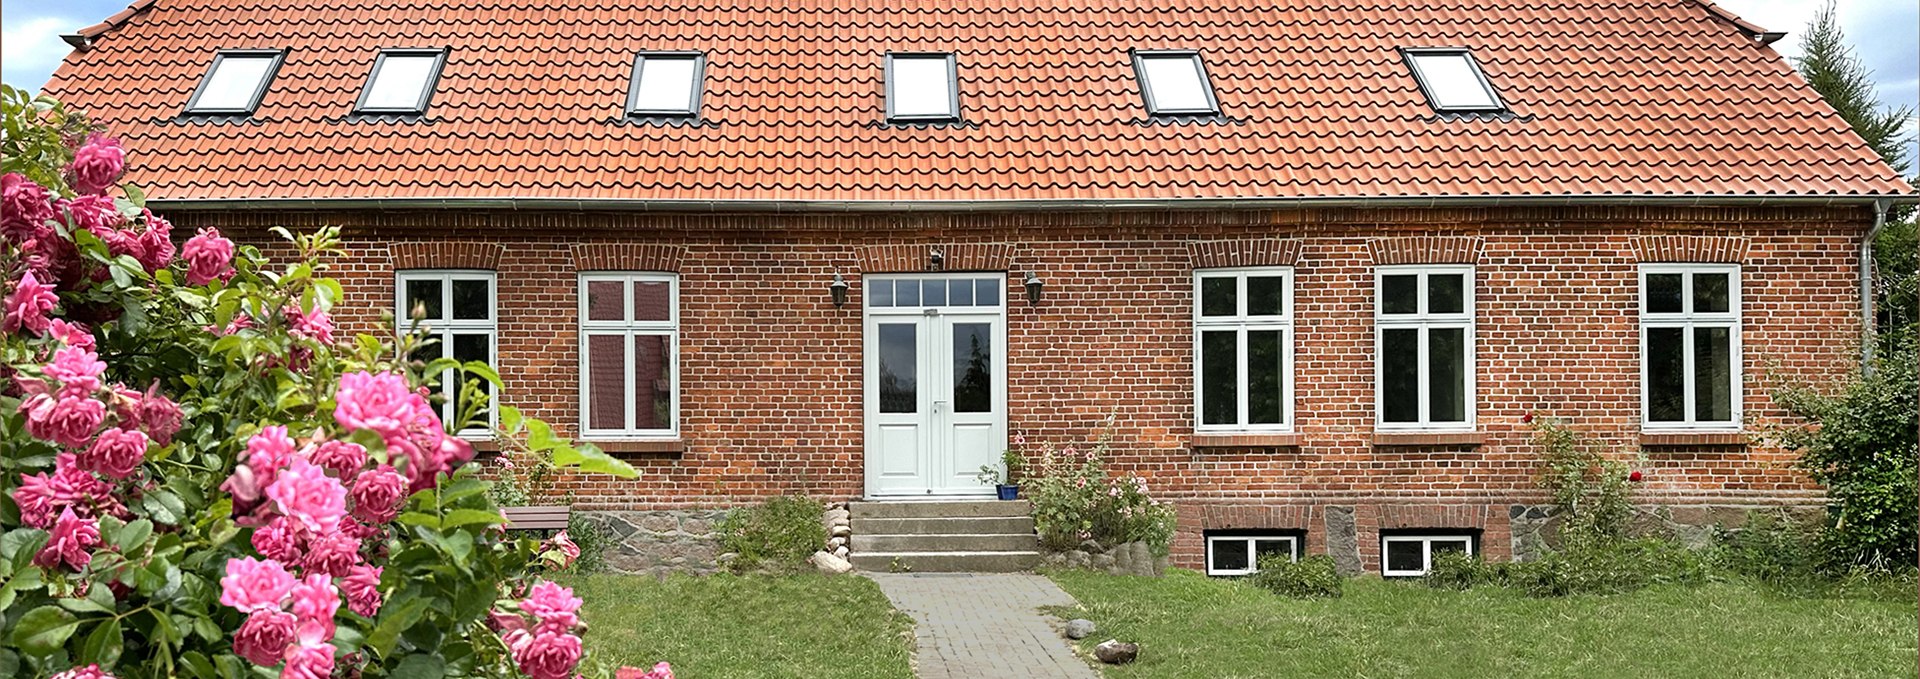 Das grundsanierte Wohnhaus mit drei Ferienwohnungen, 60-73 qm, ideal für bis zu 5 Personen., © Silke Juchter